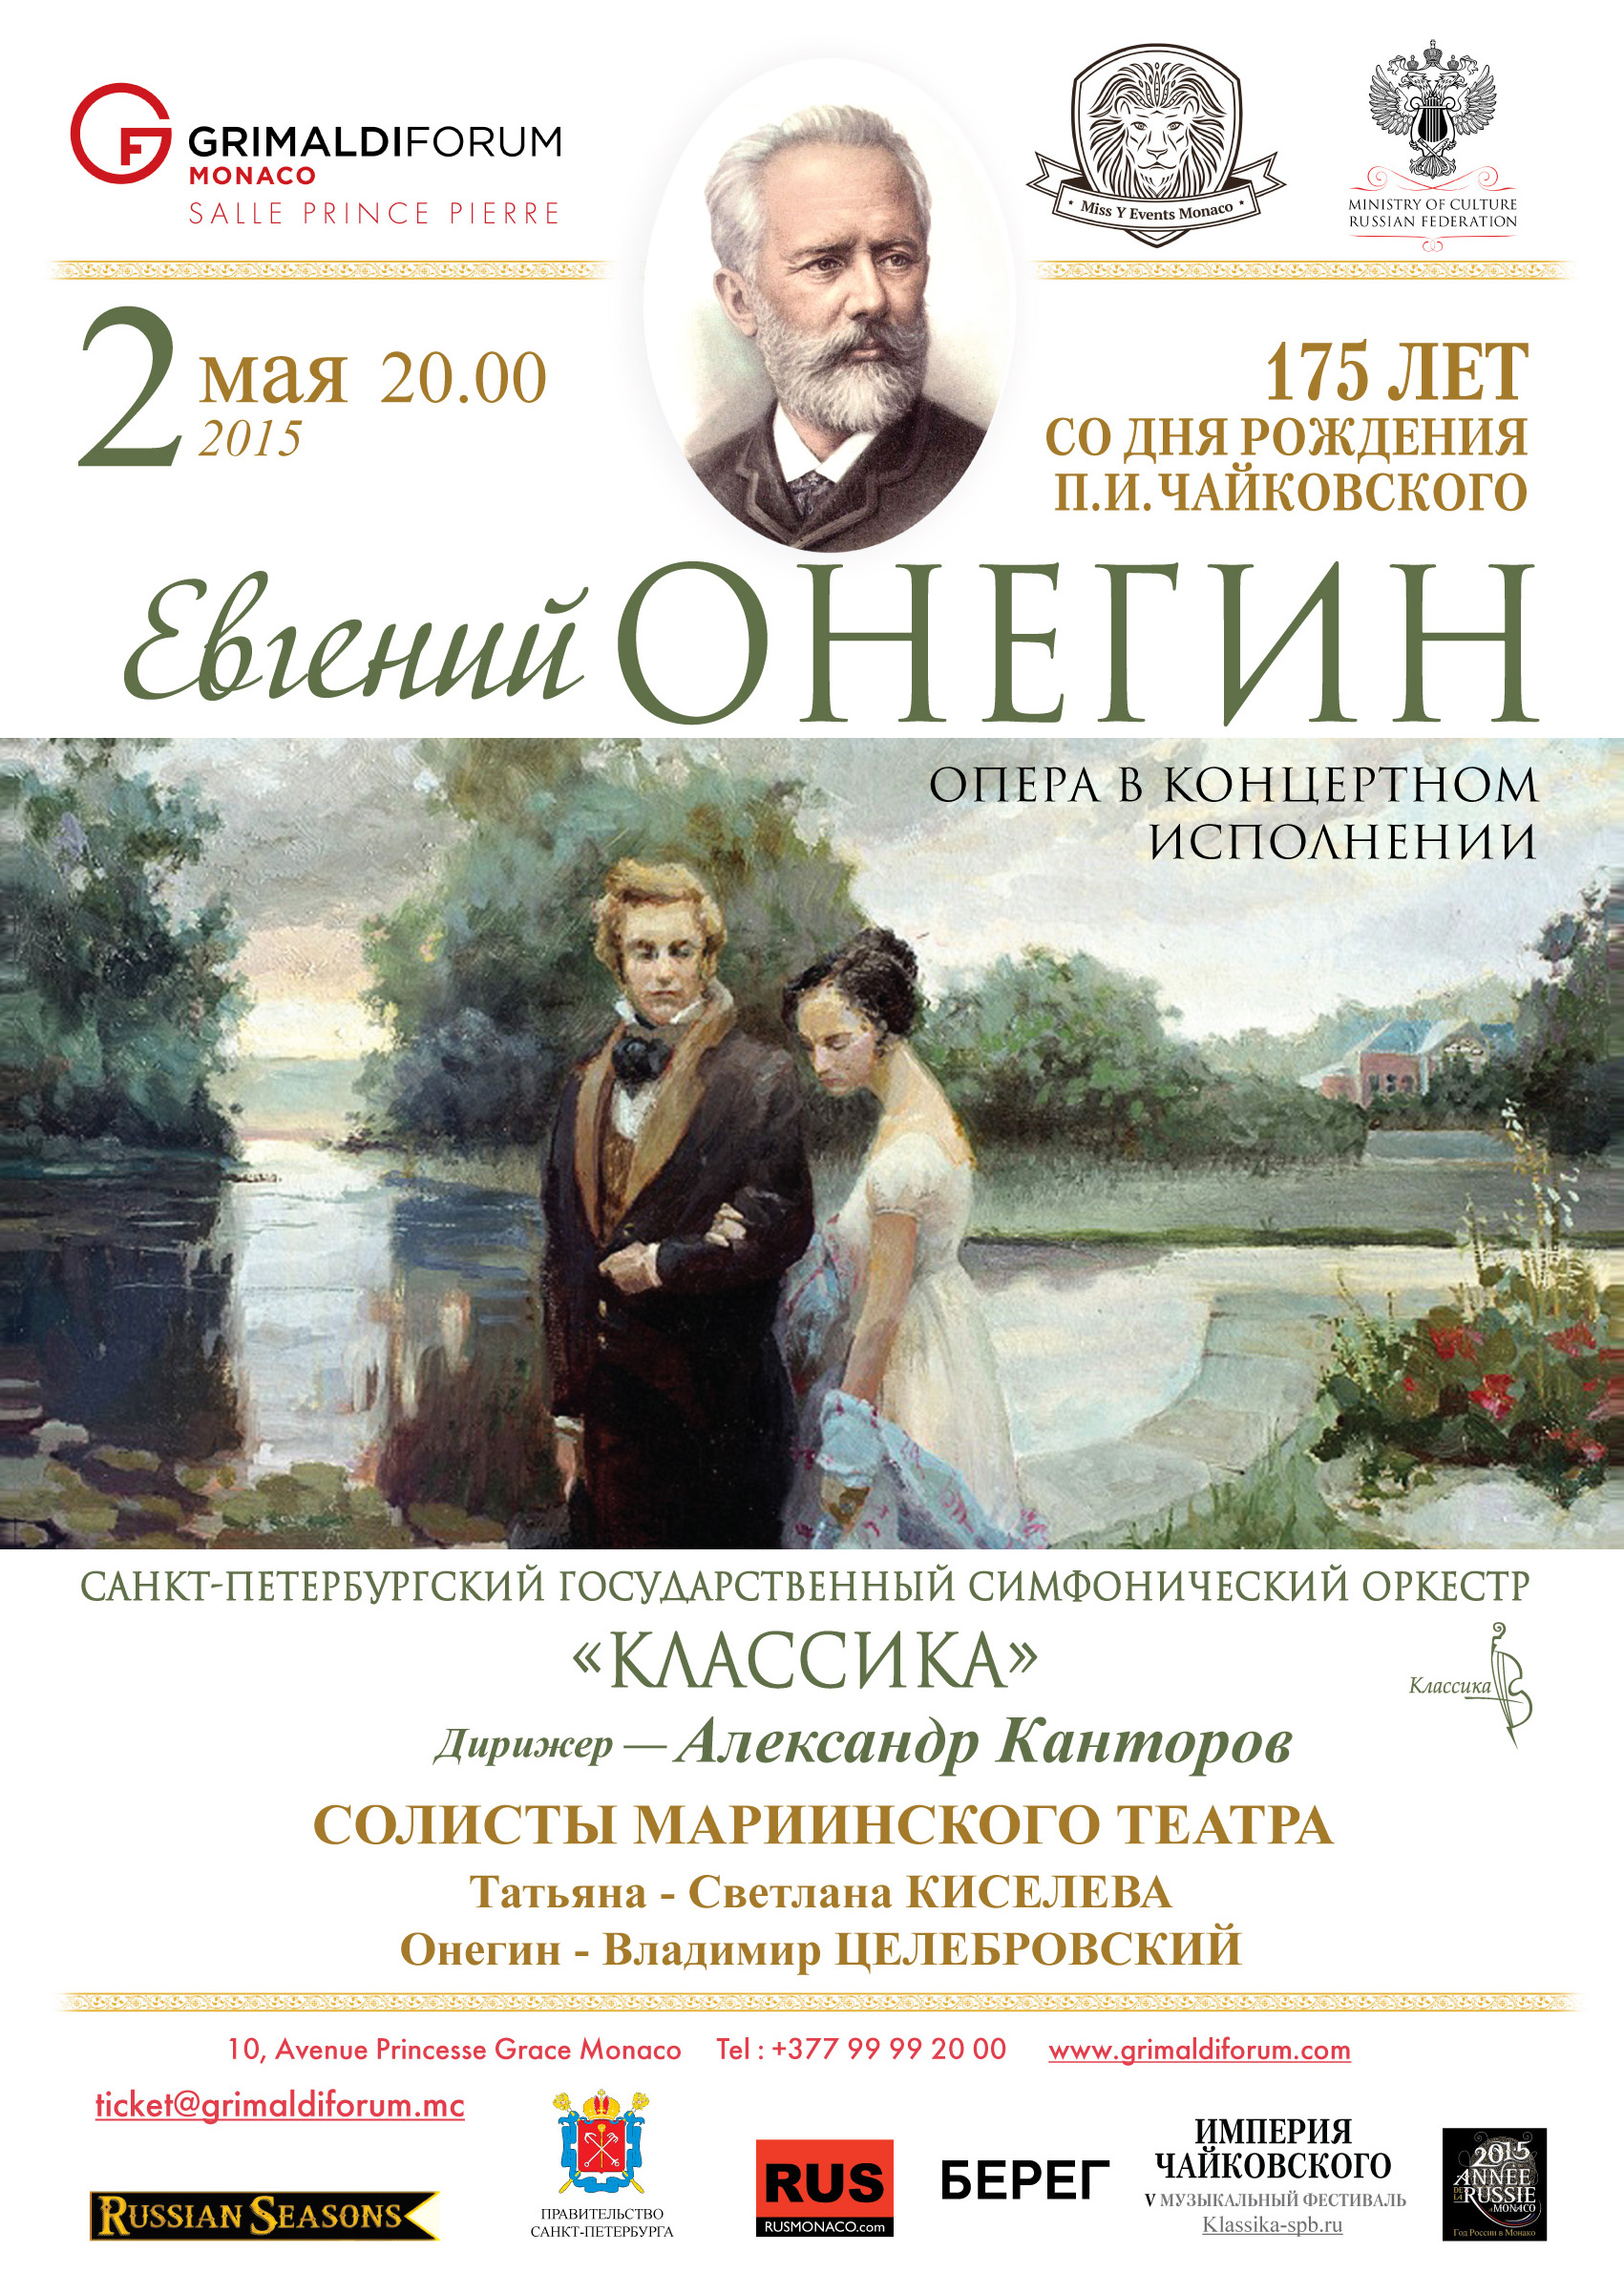 Мариинский театр афиша на июнь. Онегин в опере Чайковского.